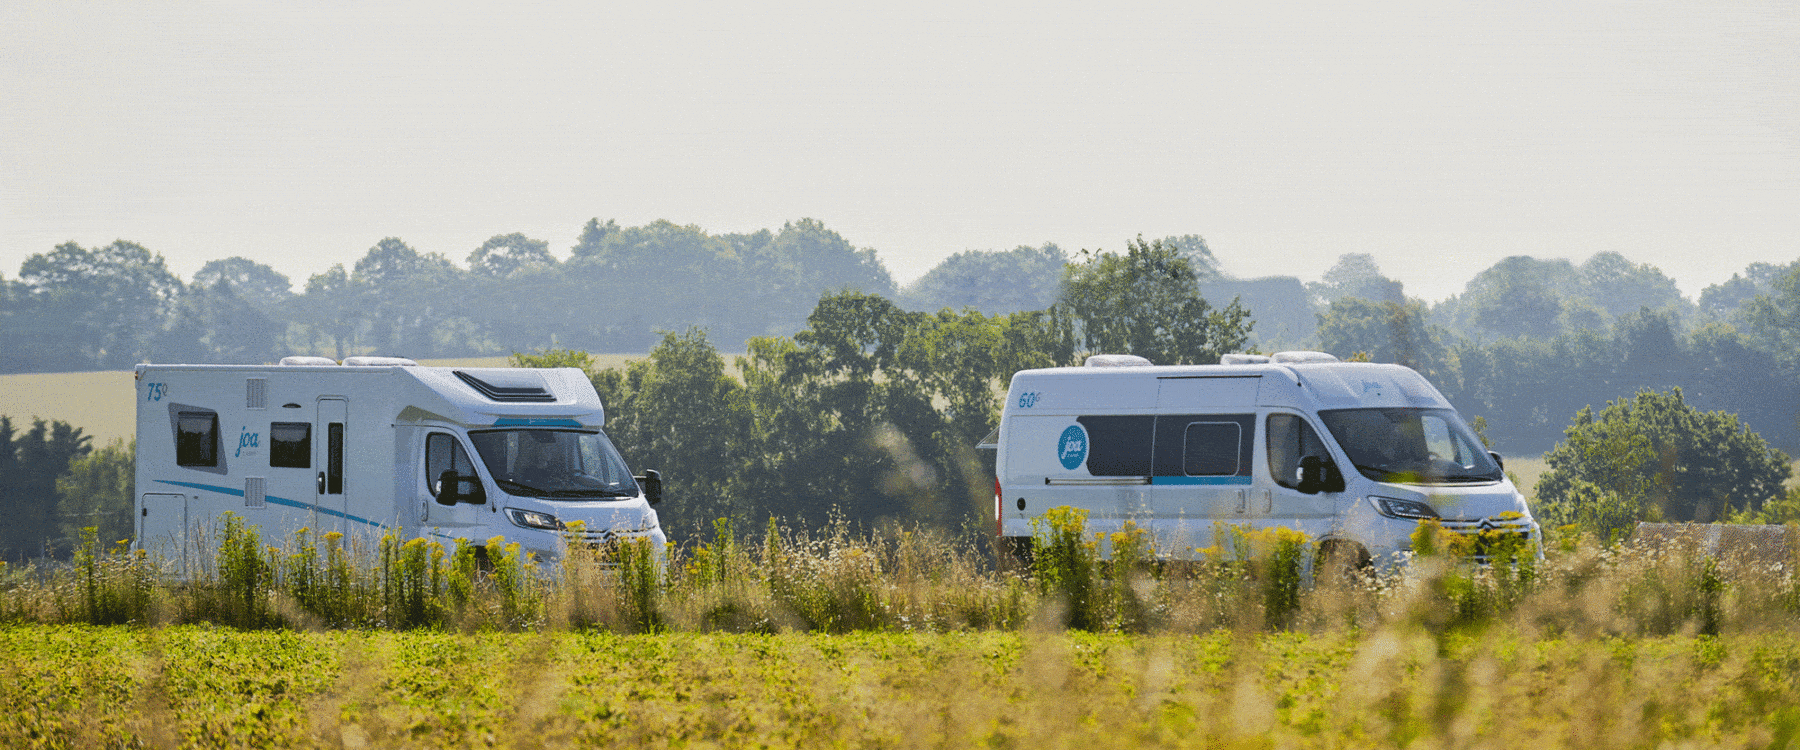 fourgon aménagé et camping car joa camp sur la route